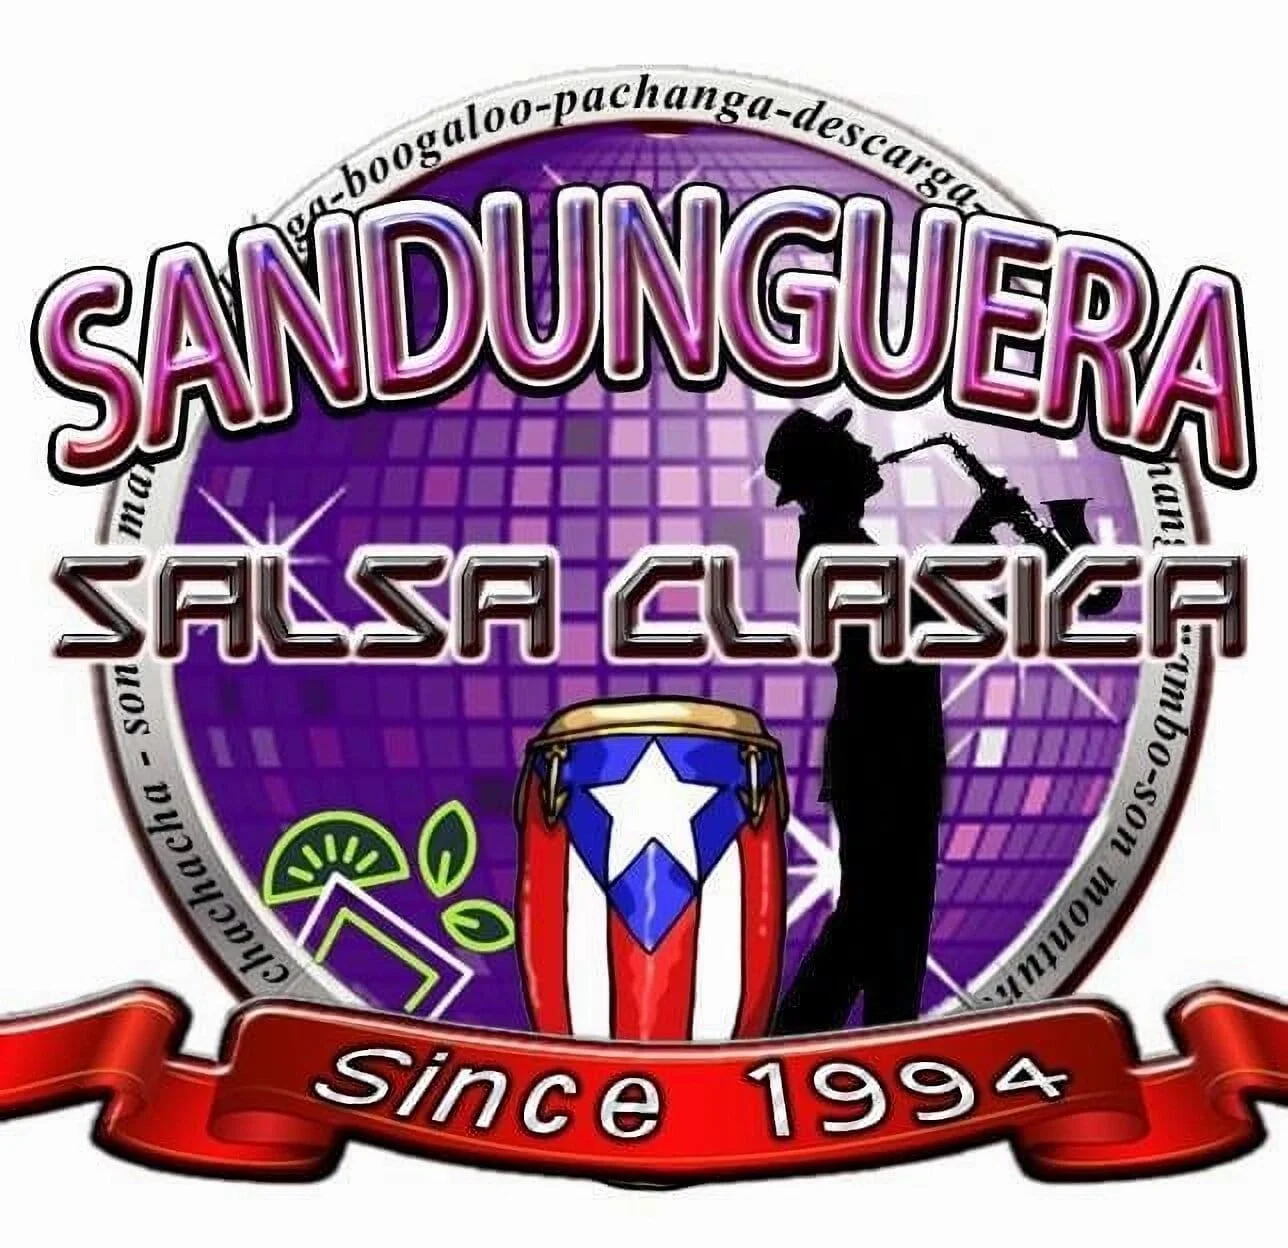 Sandunguera El templo de la salsa clasica-9461